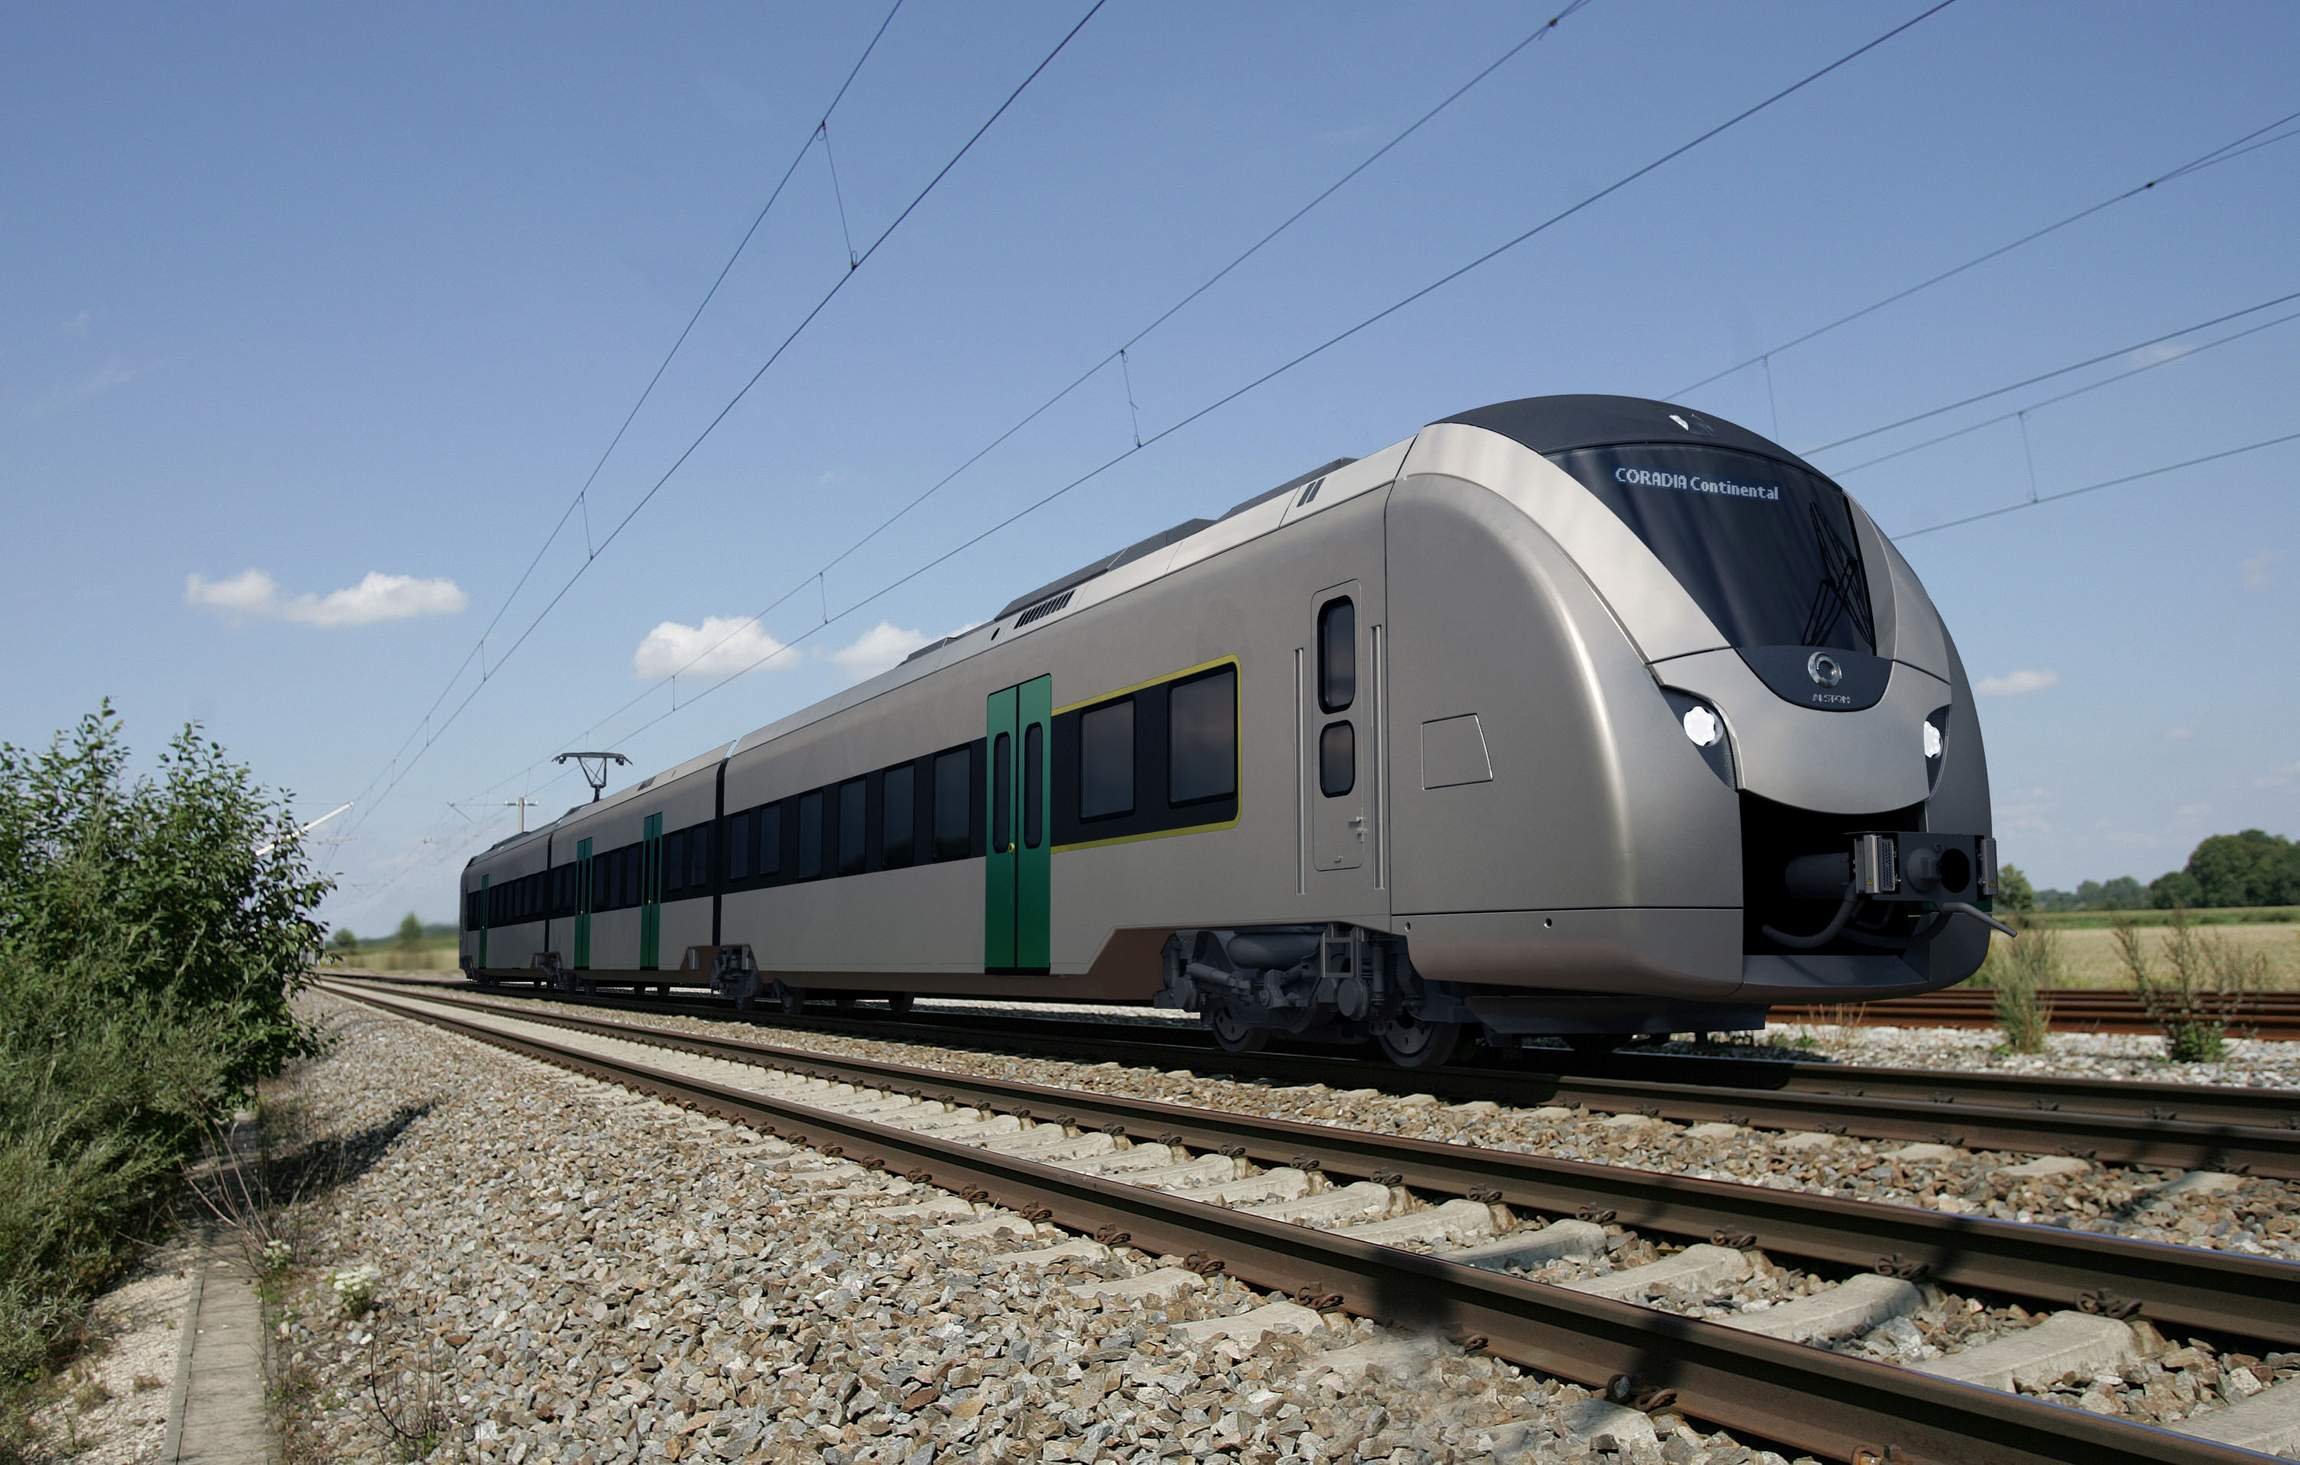  Alstom a prezentat în Germania primul tren Coradia Continental alimentat cu baterii. Are o autonomie de până la 120 de kilometri